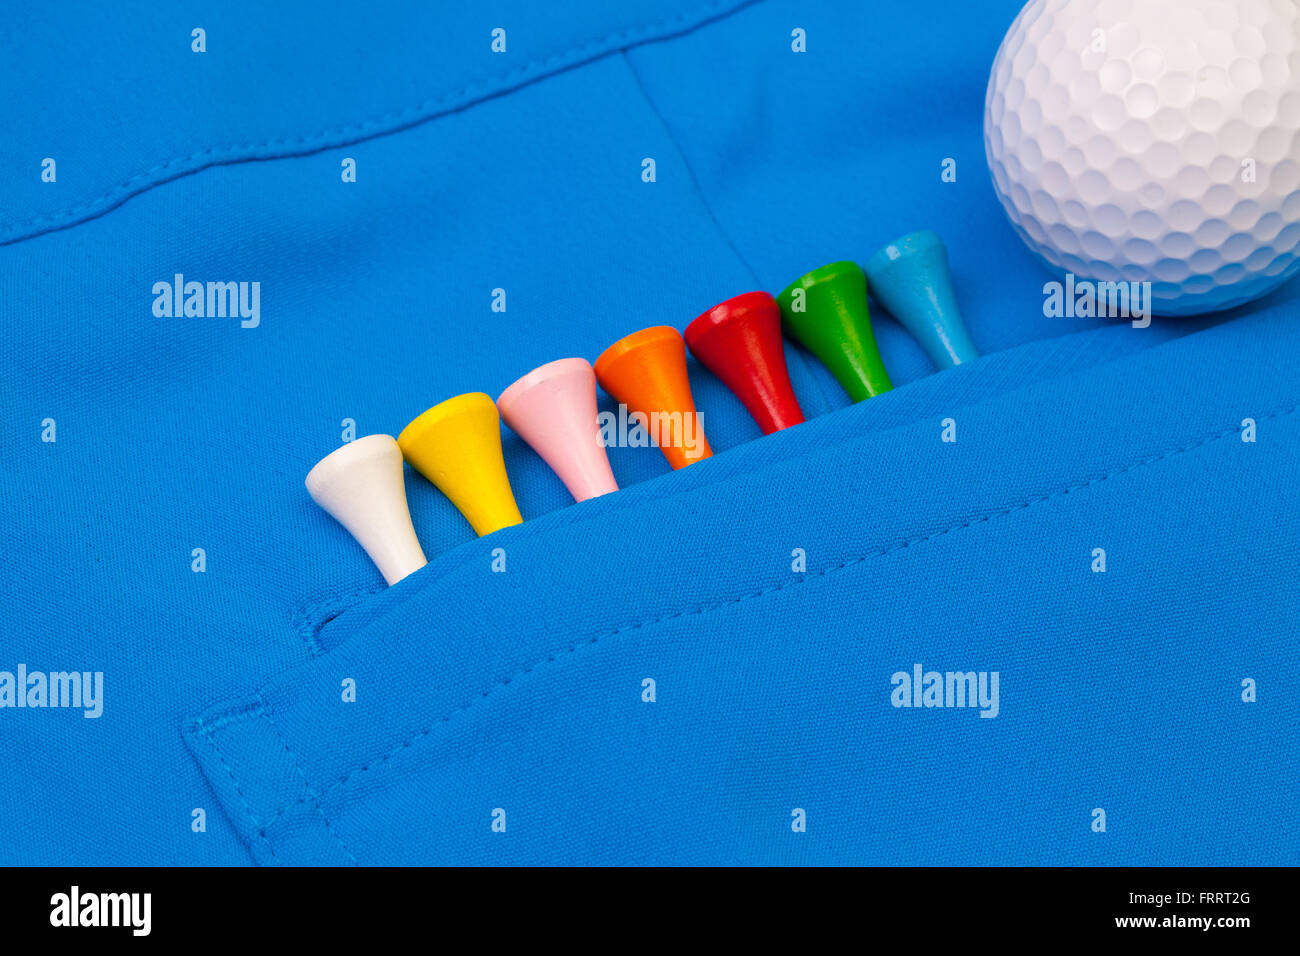 Dettaglio dei pantaloni blu e attrezzature da golf Foto Stock